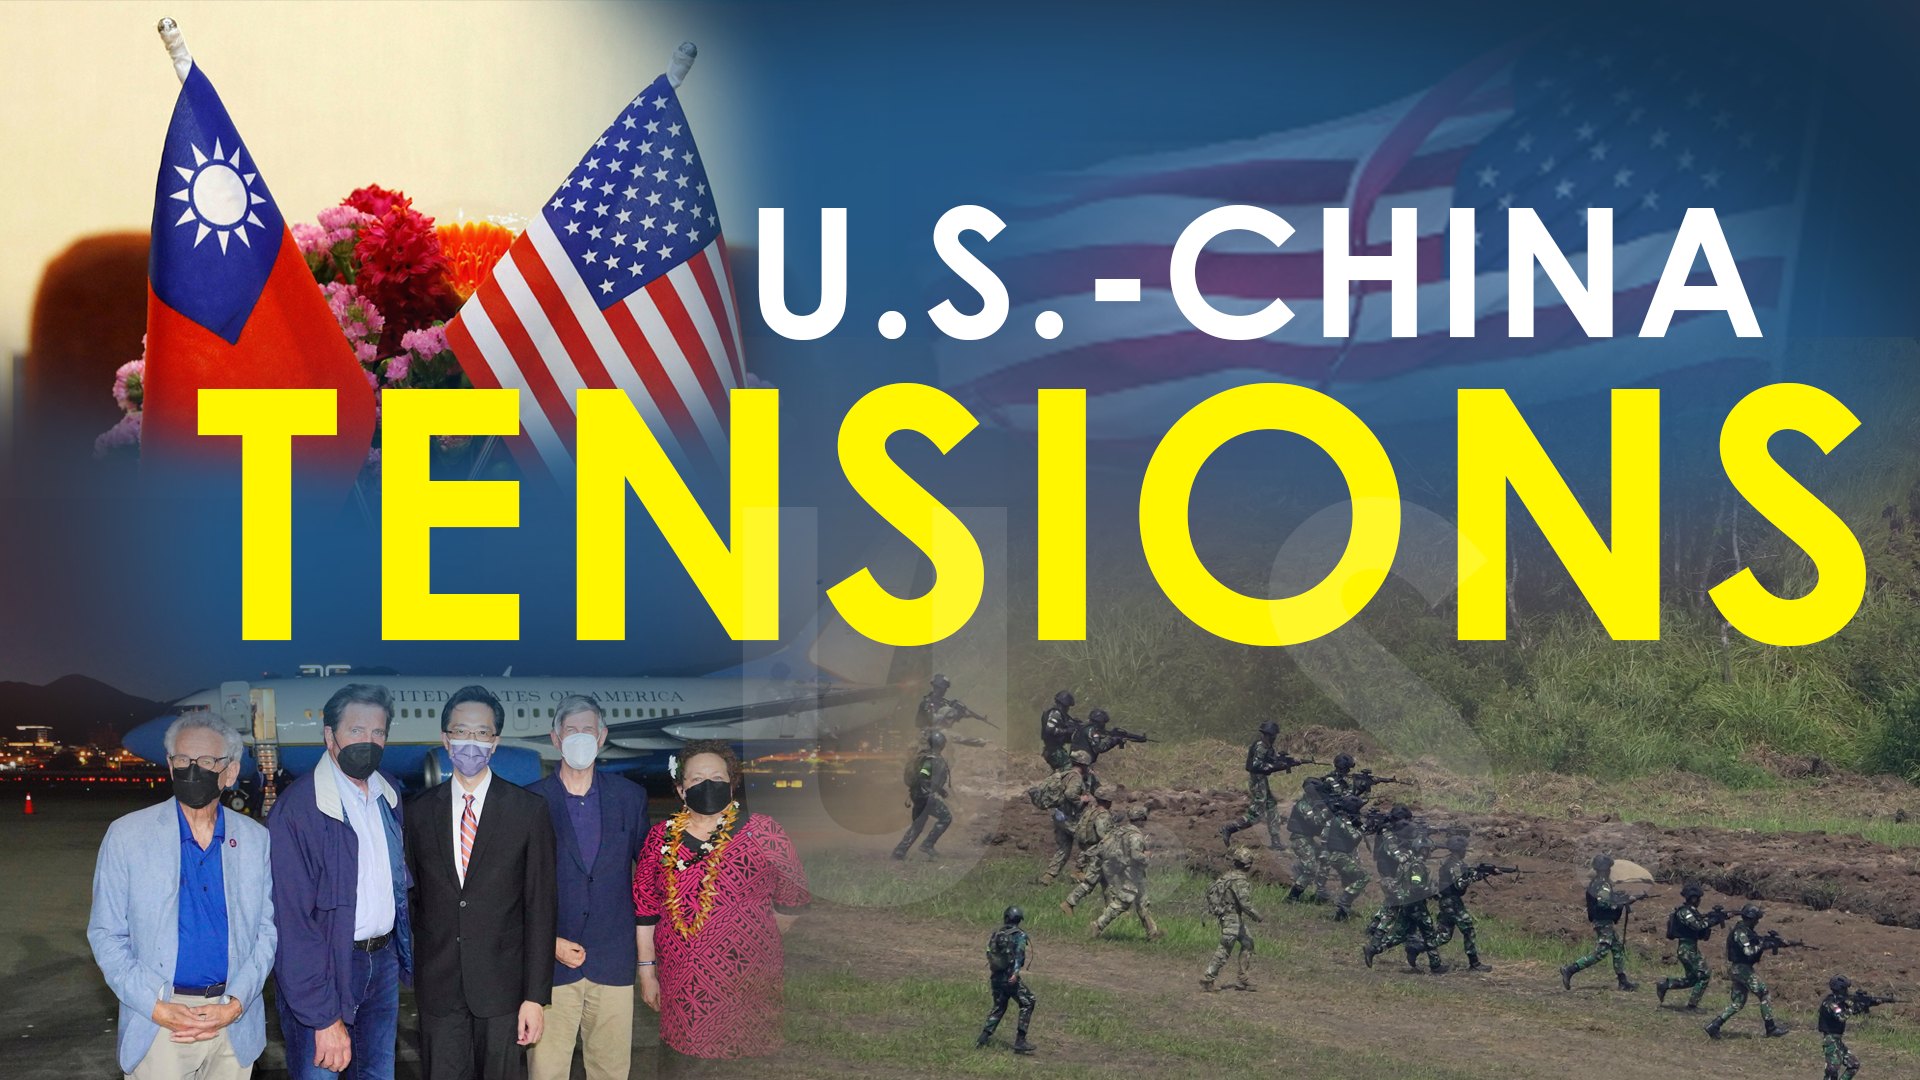 US-China tensions